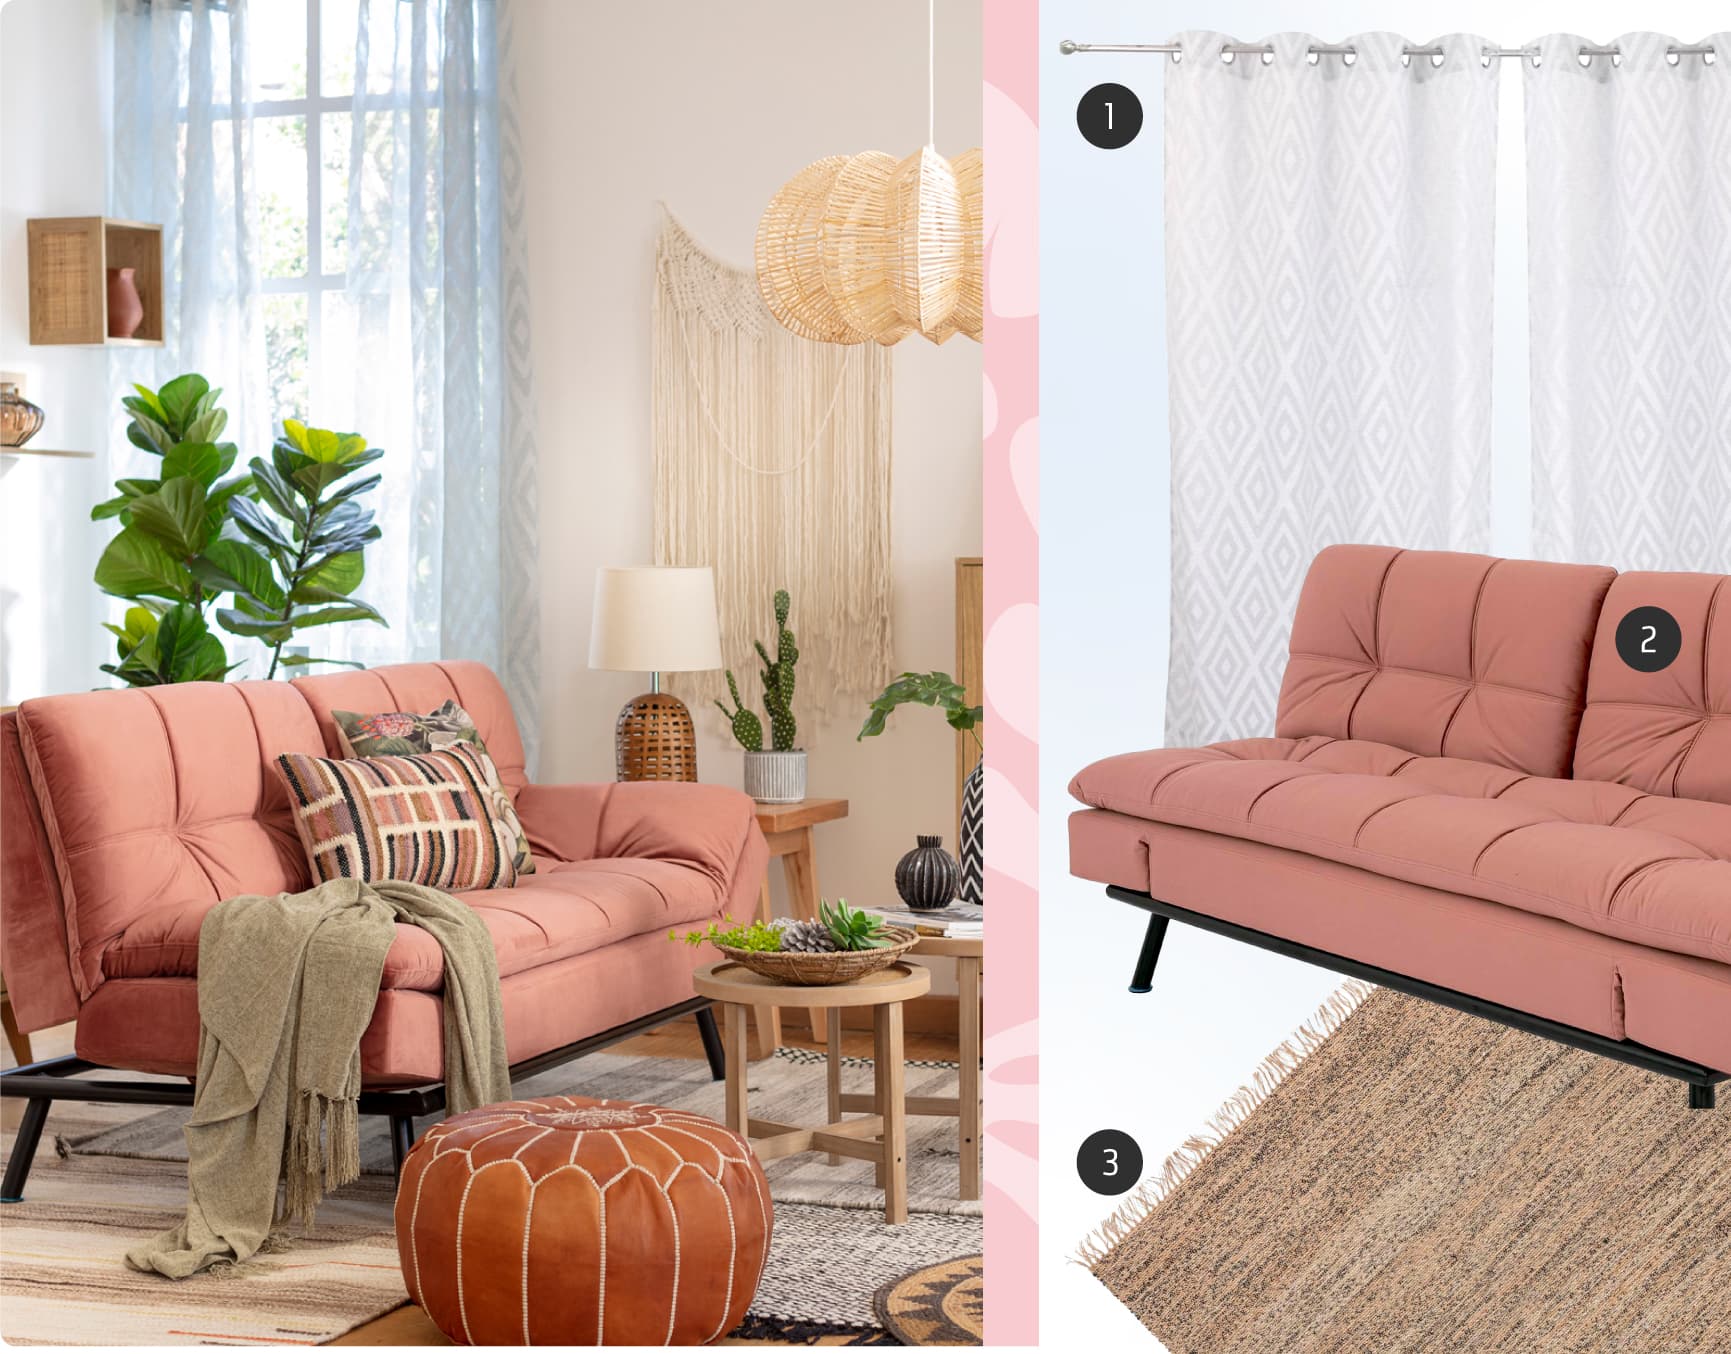 Moodboard de inspiración con una foto de living boho junto a 3 productos disponibles en Sodimac: futón color salmón, alfombra café de fibras naturales y cortina blanca.